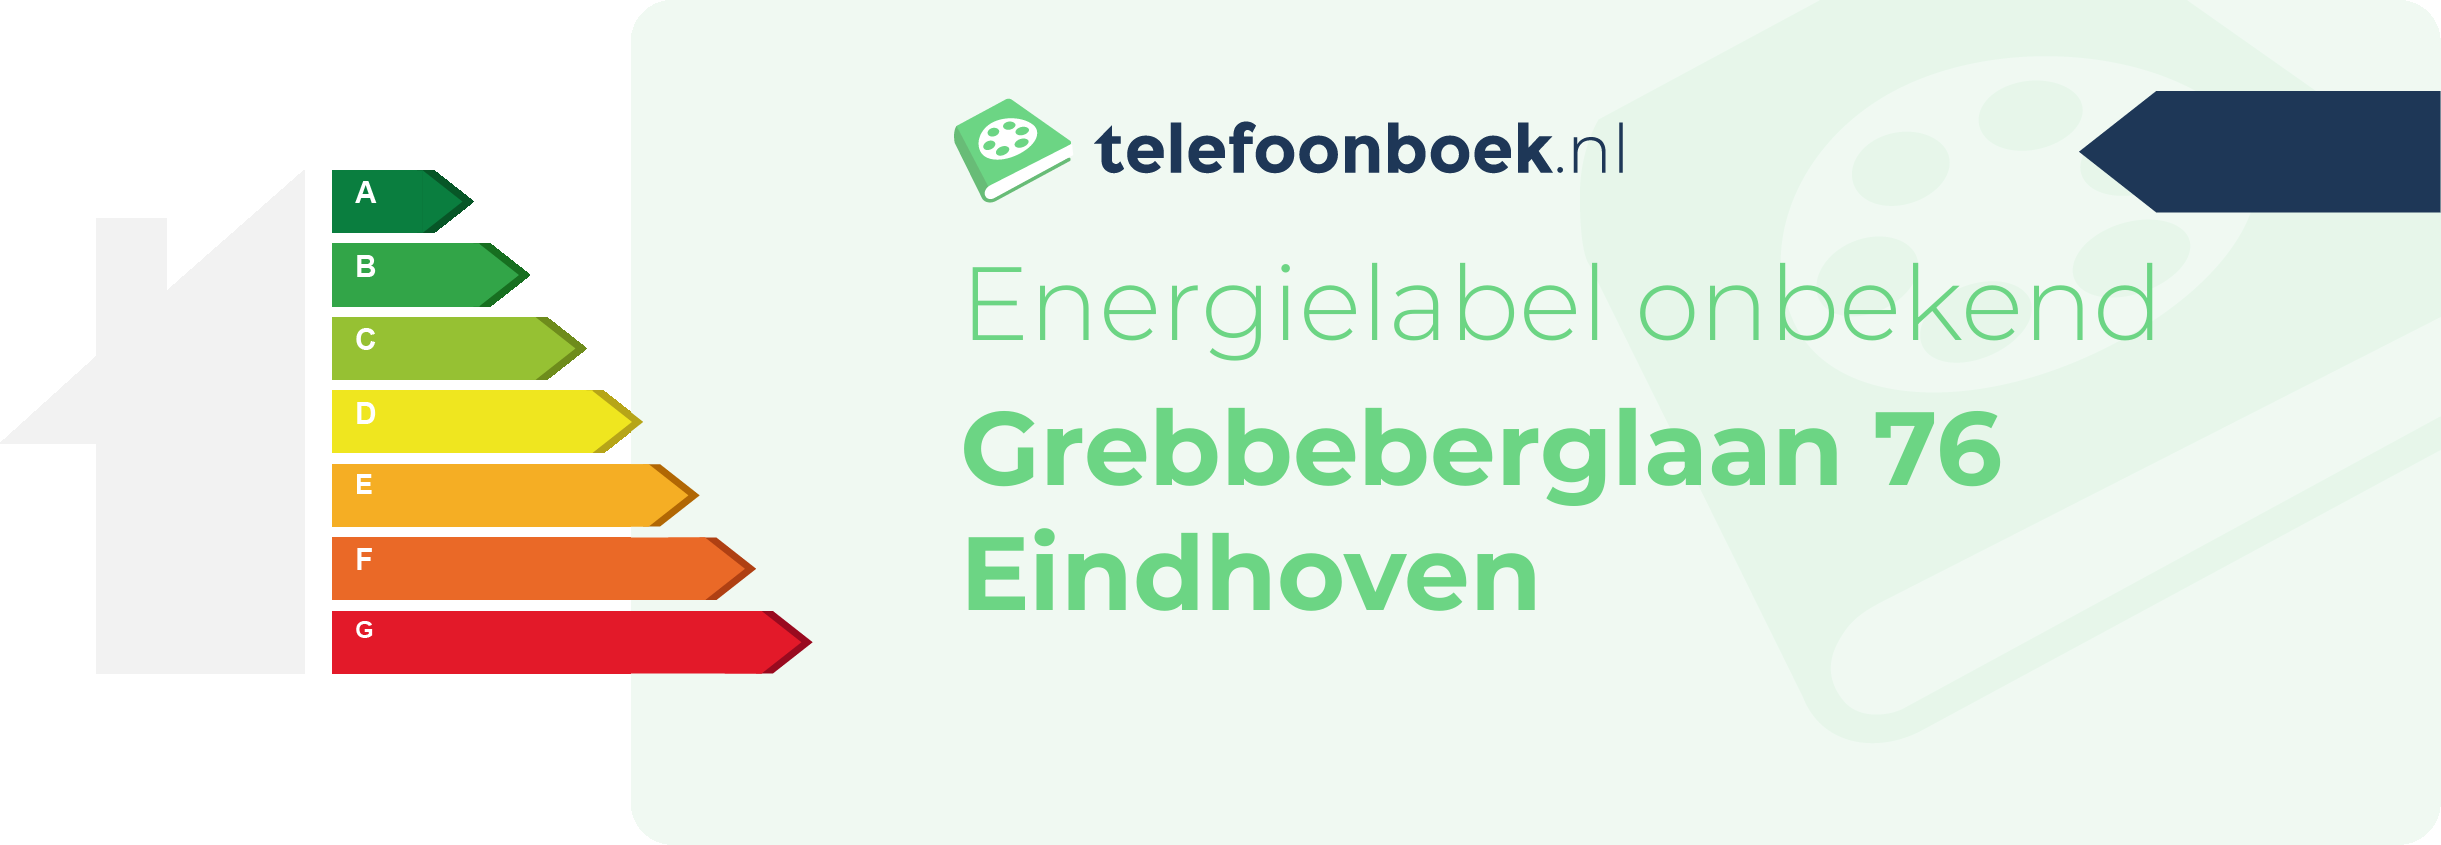 Energielabel Grebbeberglaan 76 Eindhoven